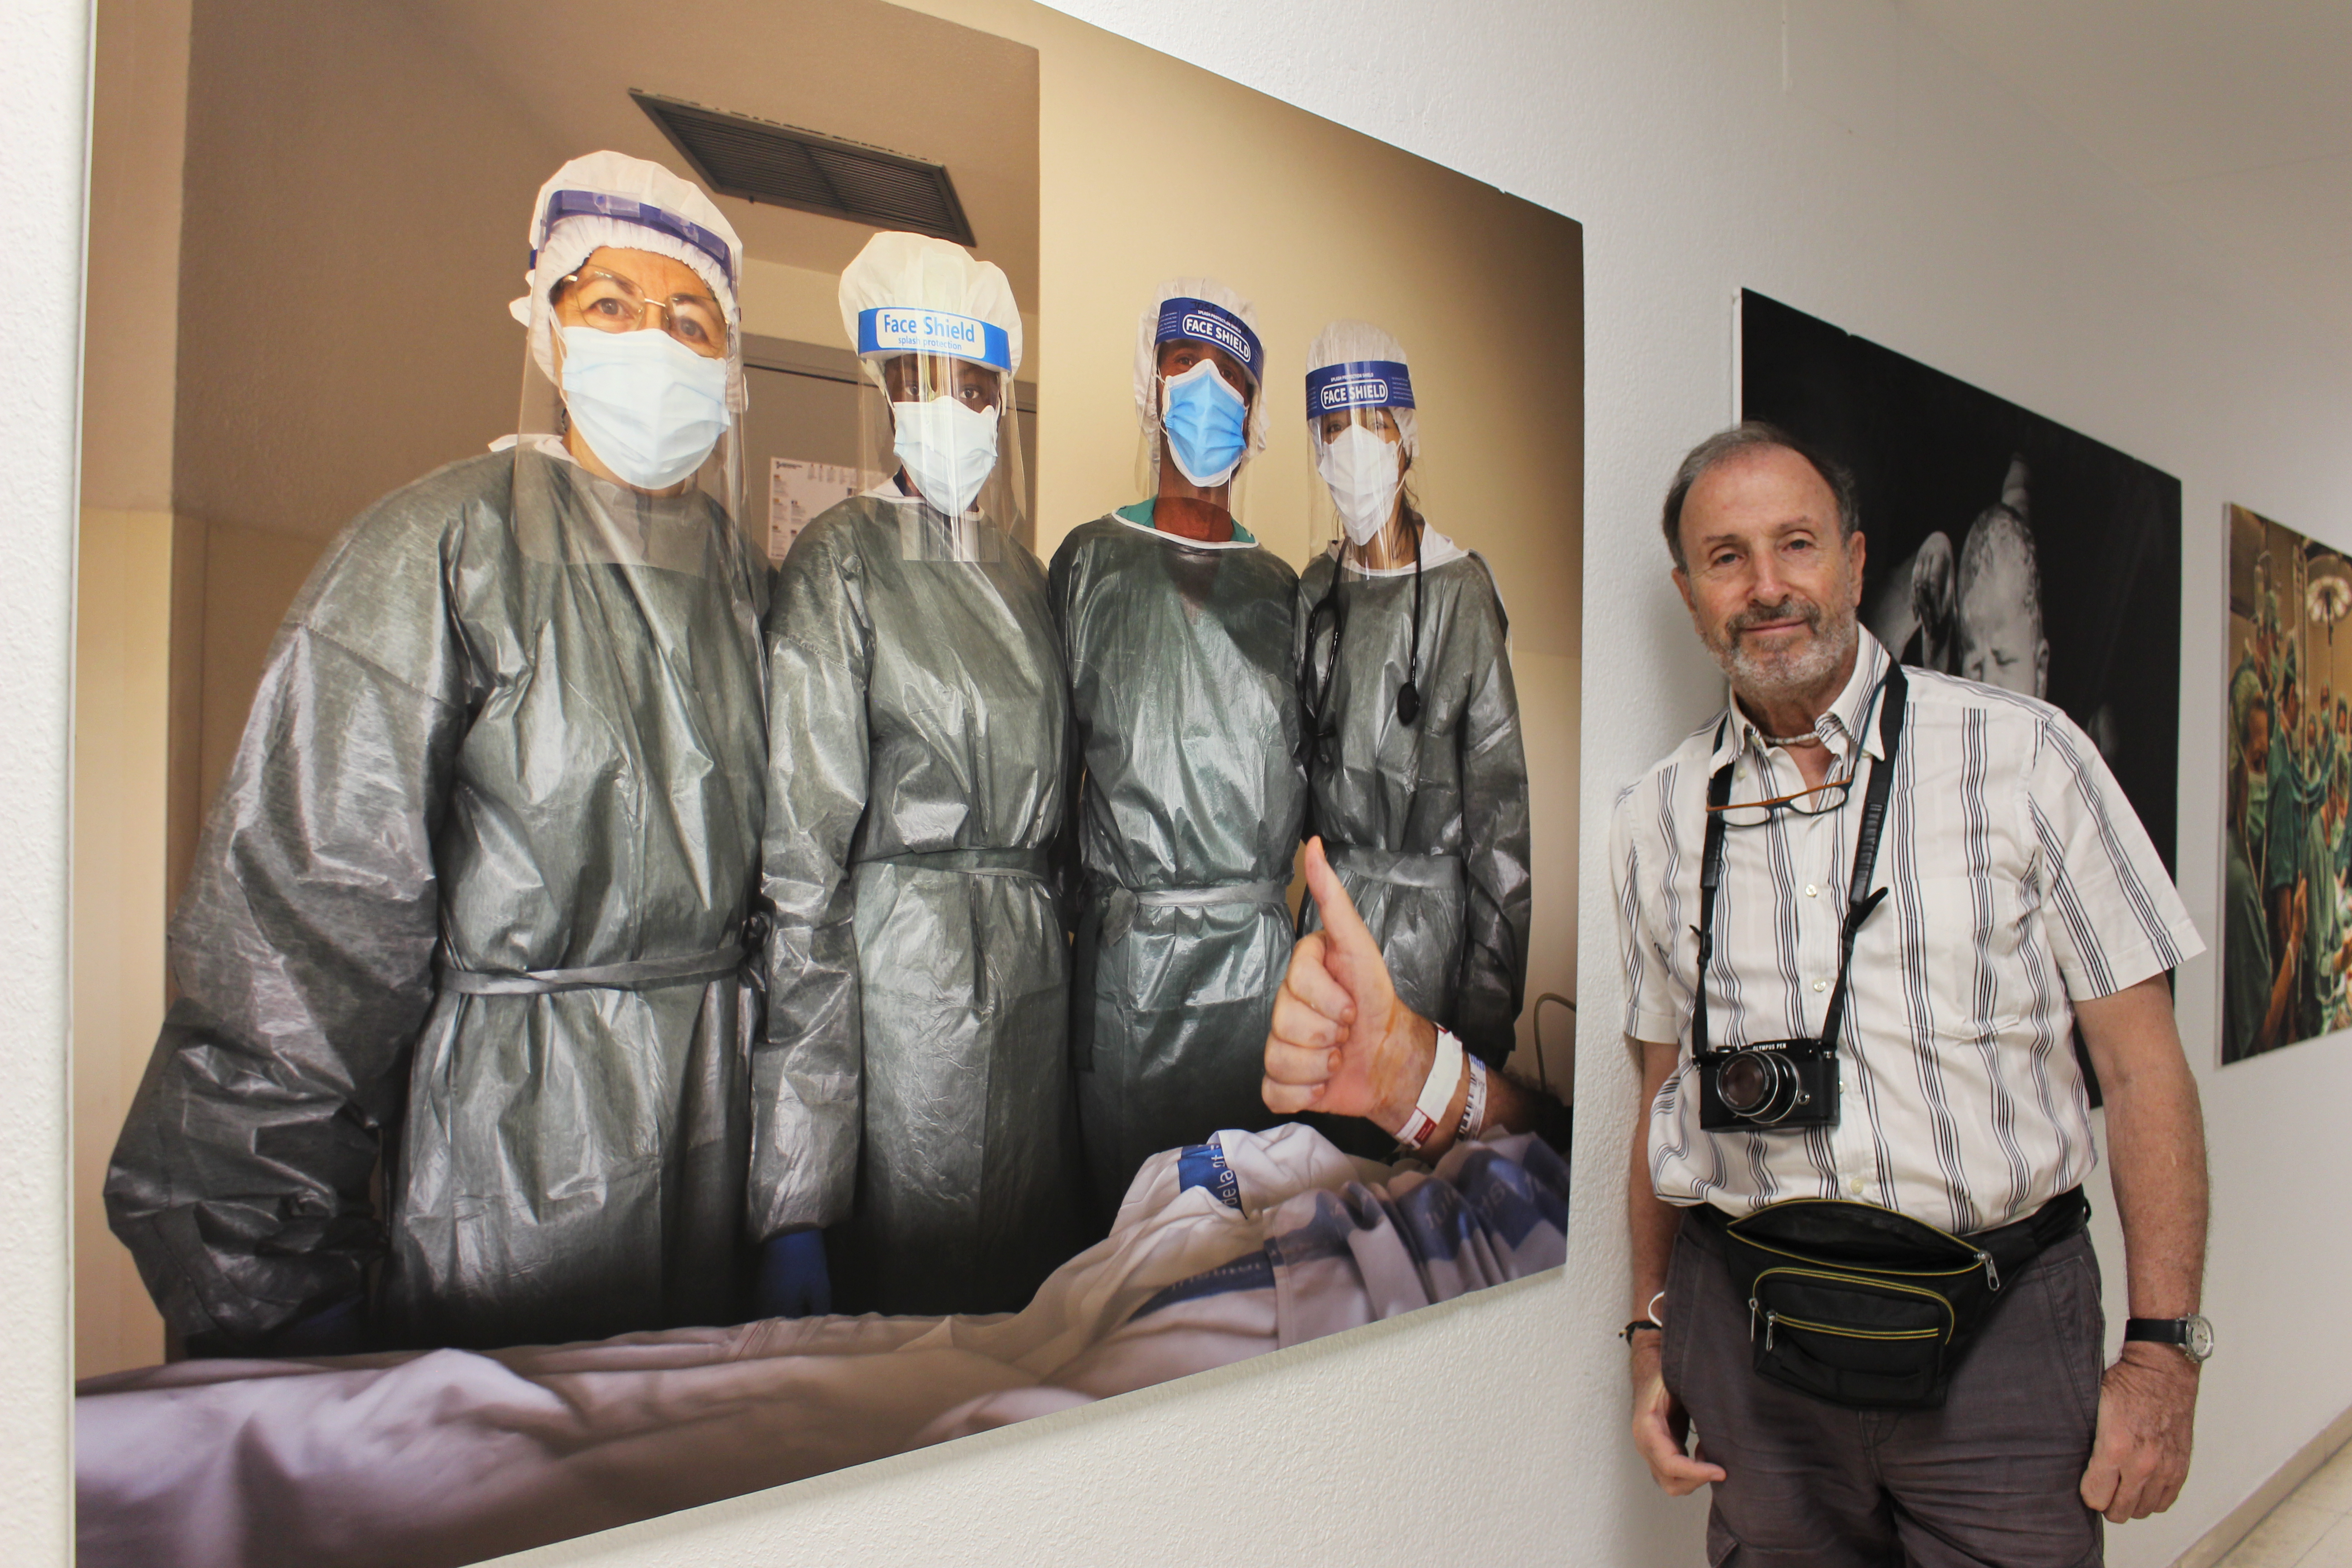 El fotògraf Tino Soriano davant la fotografia que es va fer al Trueta al 2020 amb professionals que atenien pacients amb Covid 